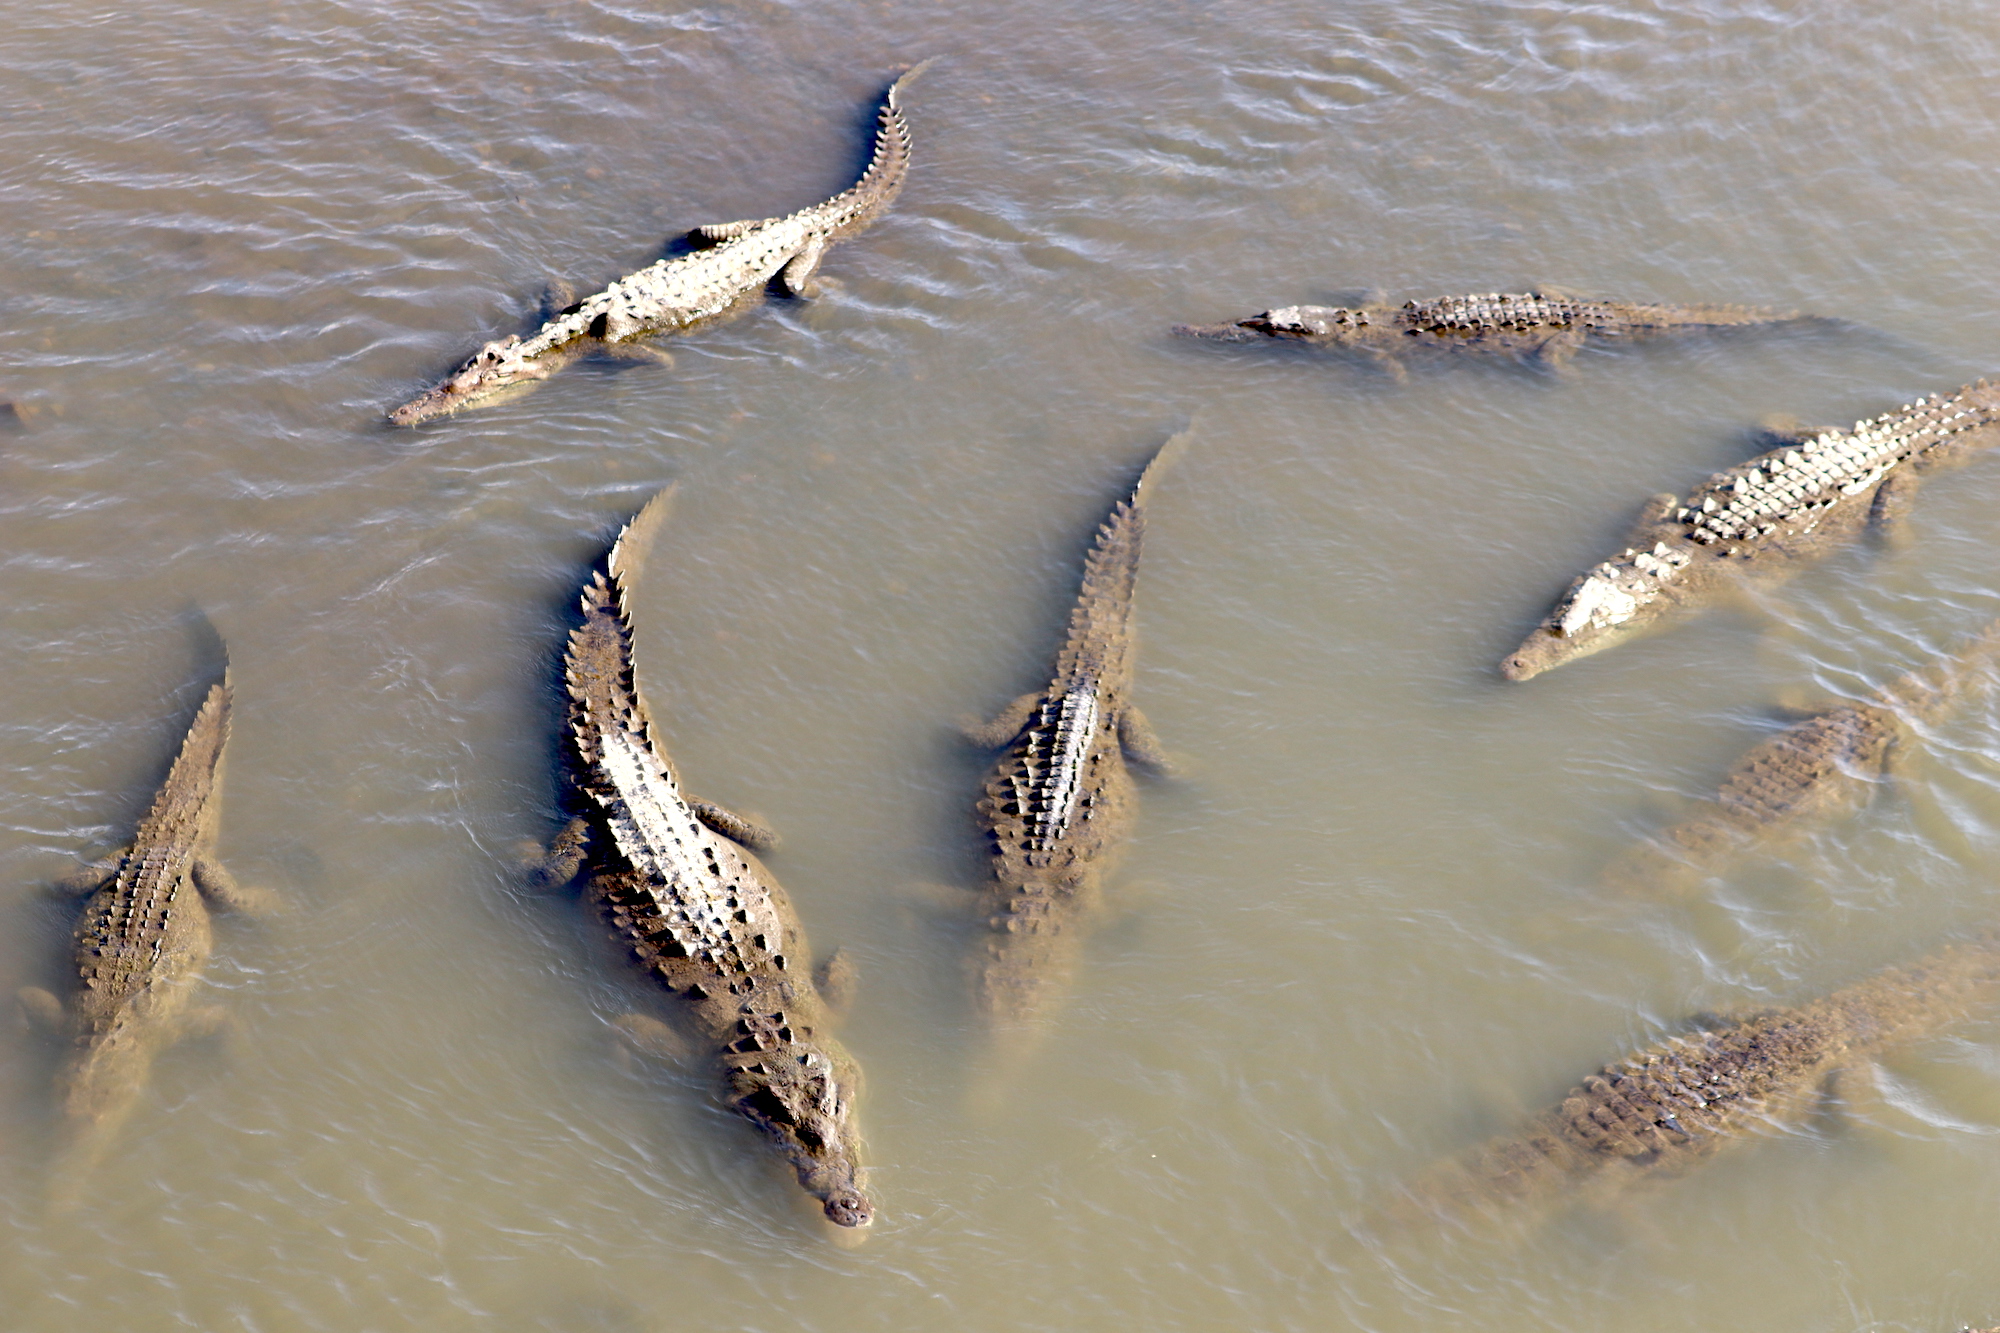 The crocodiles view from Crocodile Bridge Costa Rica